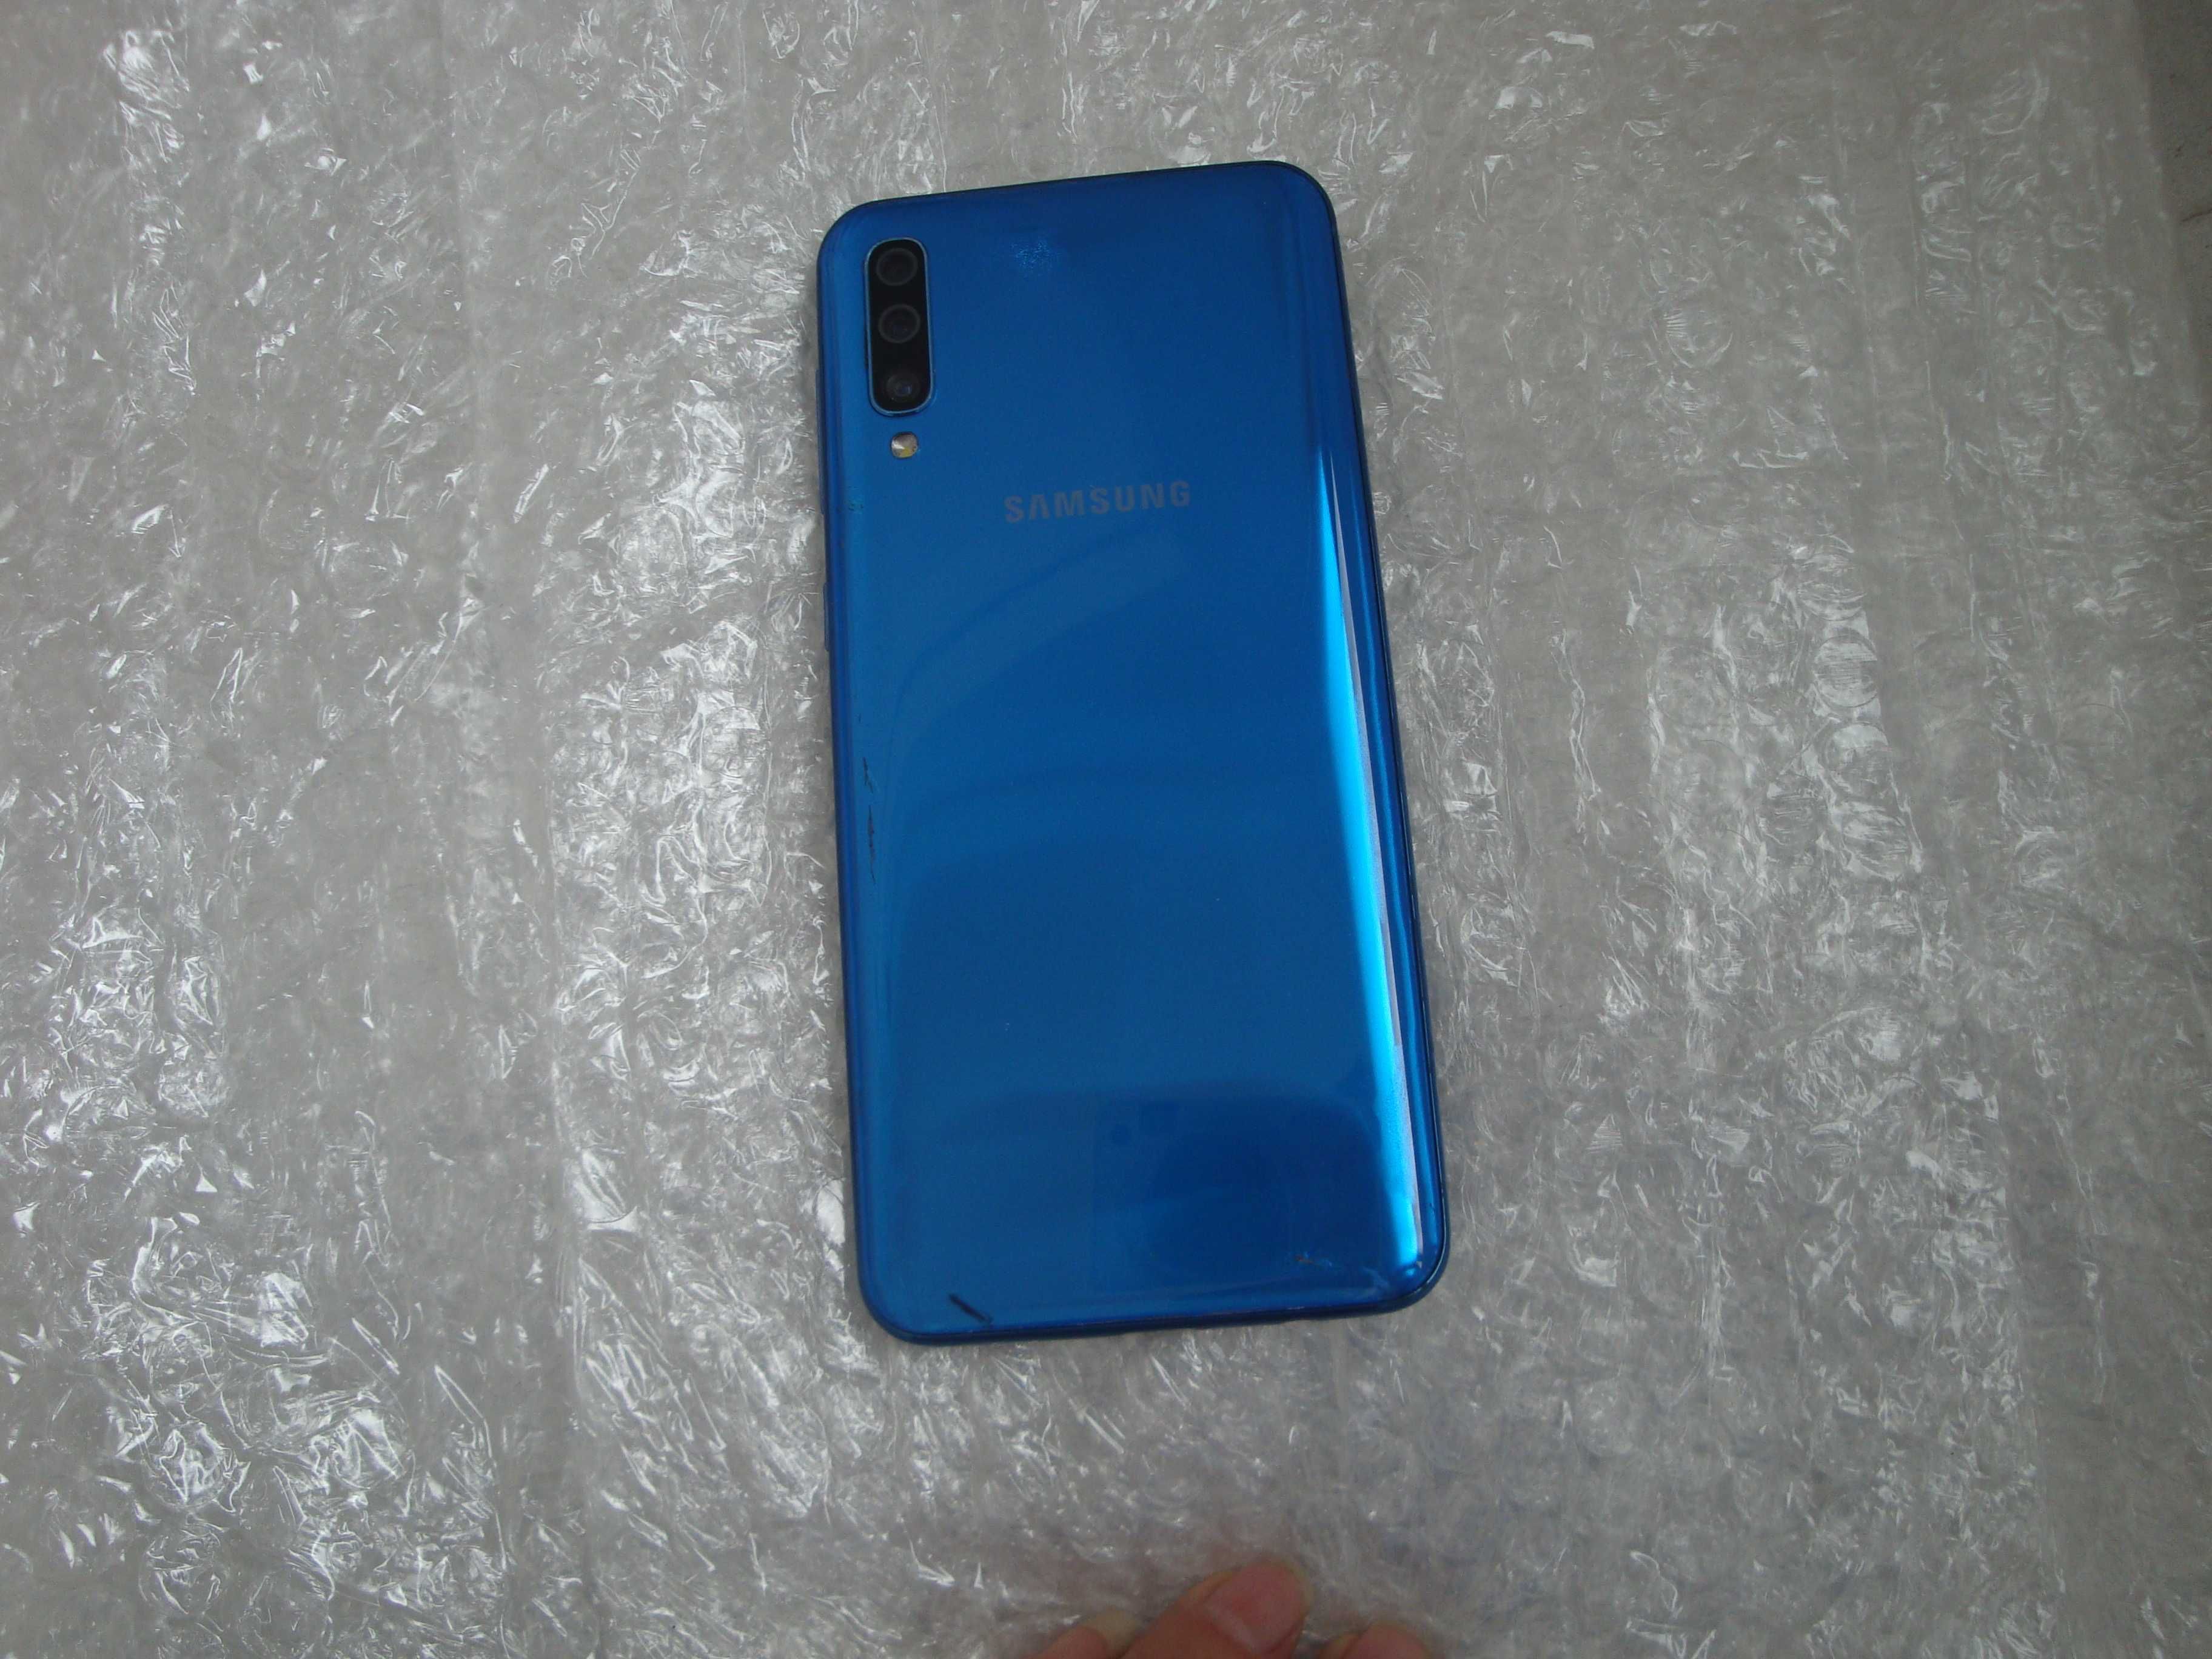 Samsung Galaxy A50_4Gb/128GB_DualSim